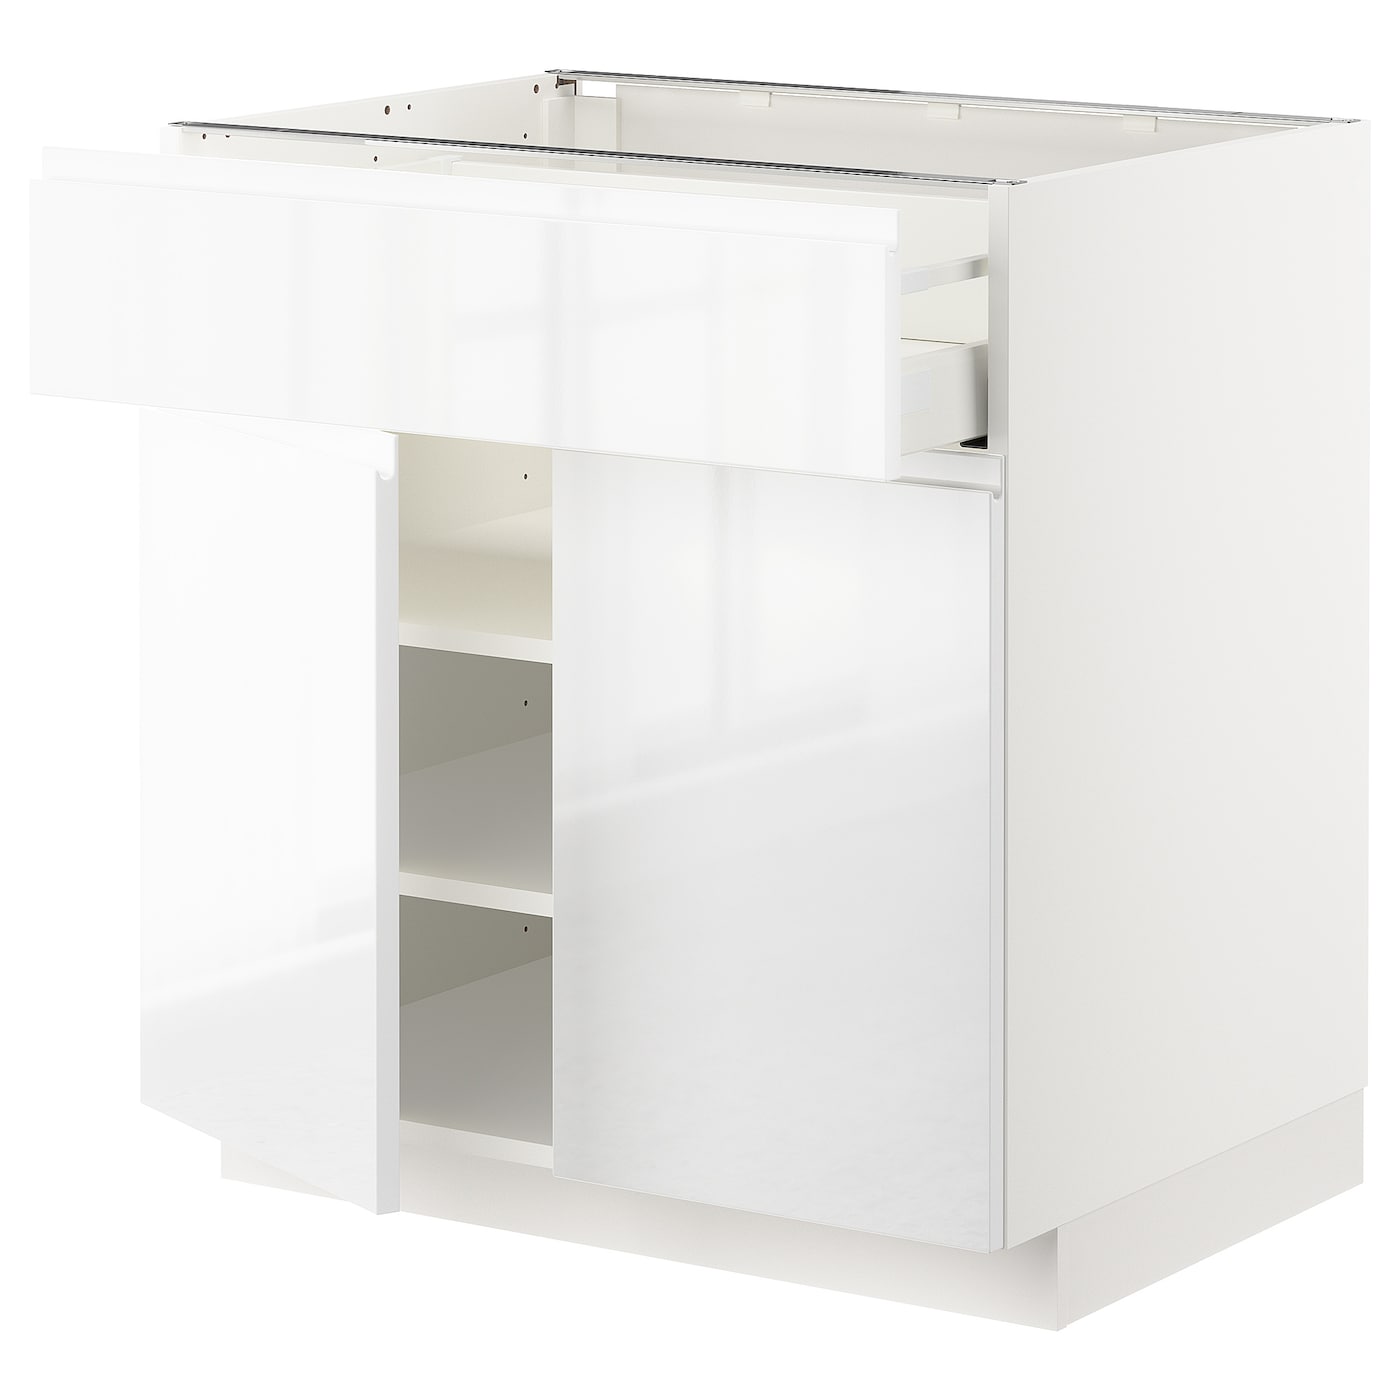 Напольный кухонный шкаф  - IKEA METOD MAXIMERA, 88x62x80см, белый, МЕТОД МАКСИМЕРА ИКЕА Напольный кухонный шкаф ИКЕА